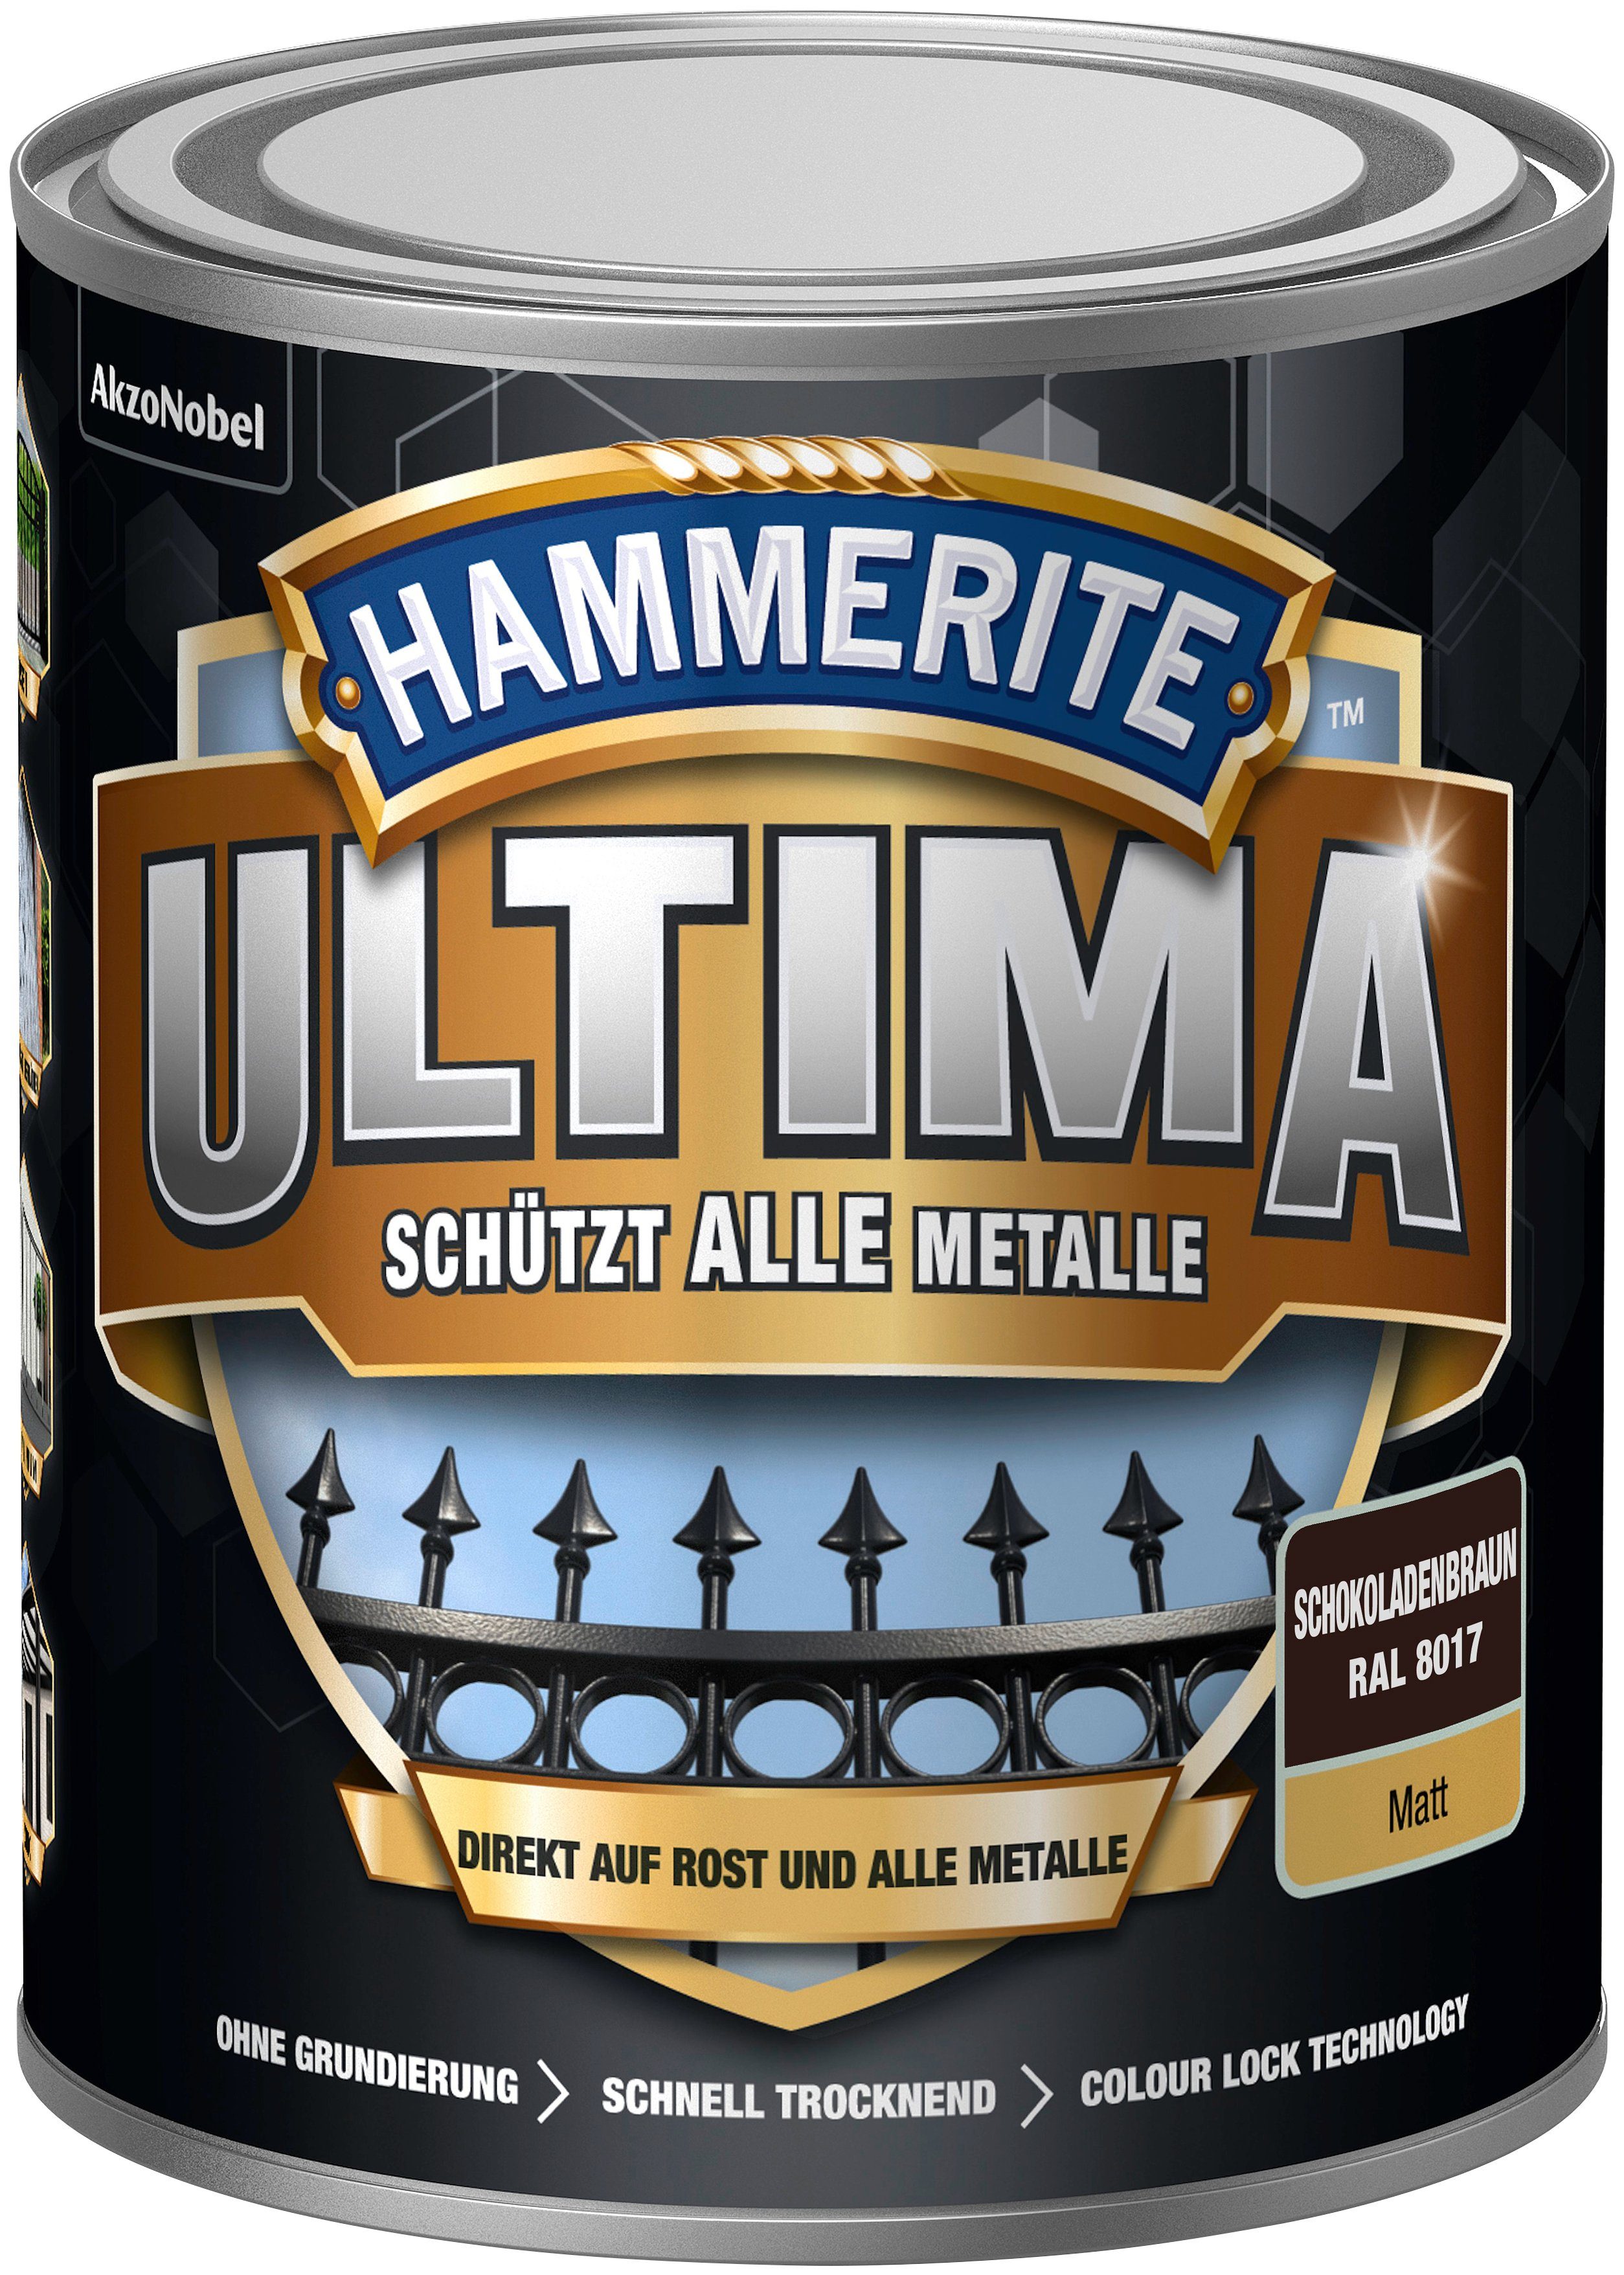 Metalle, alle ULTIMA RAL schützt Metallschutzlack 3in1, matt 8017, schokoladenbraun Hammerite 